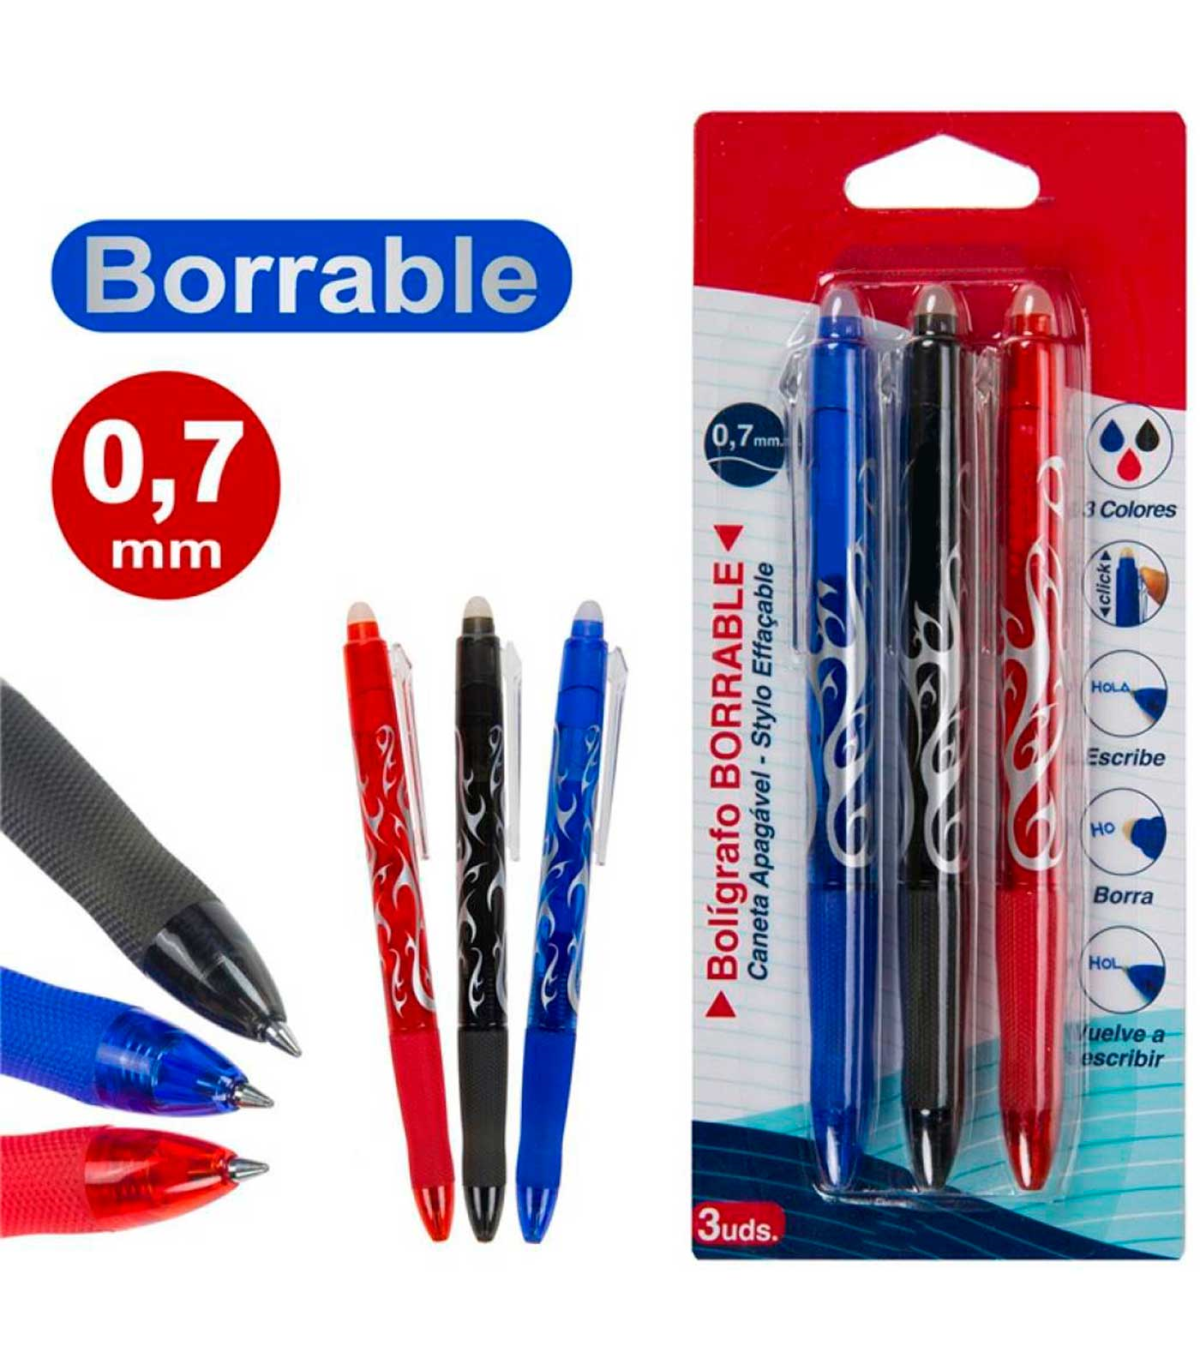 Tradineur - Pack de 5 bolígrafos de colores, tinta gel, punta de bola de 1  mm y grip ergonómico, escritura suave y precisa, uso